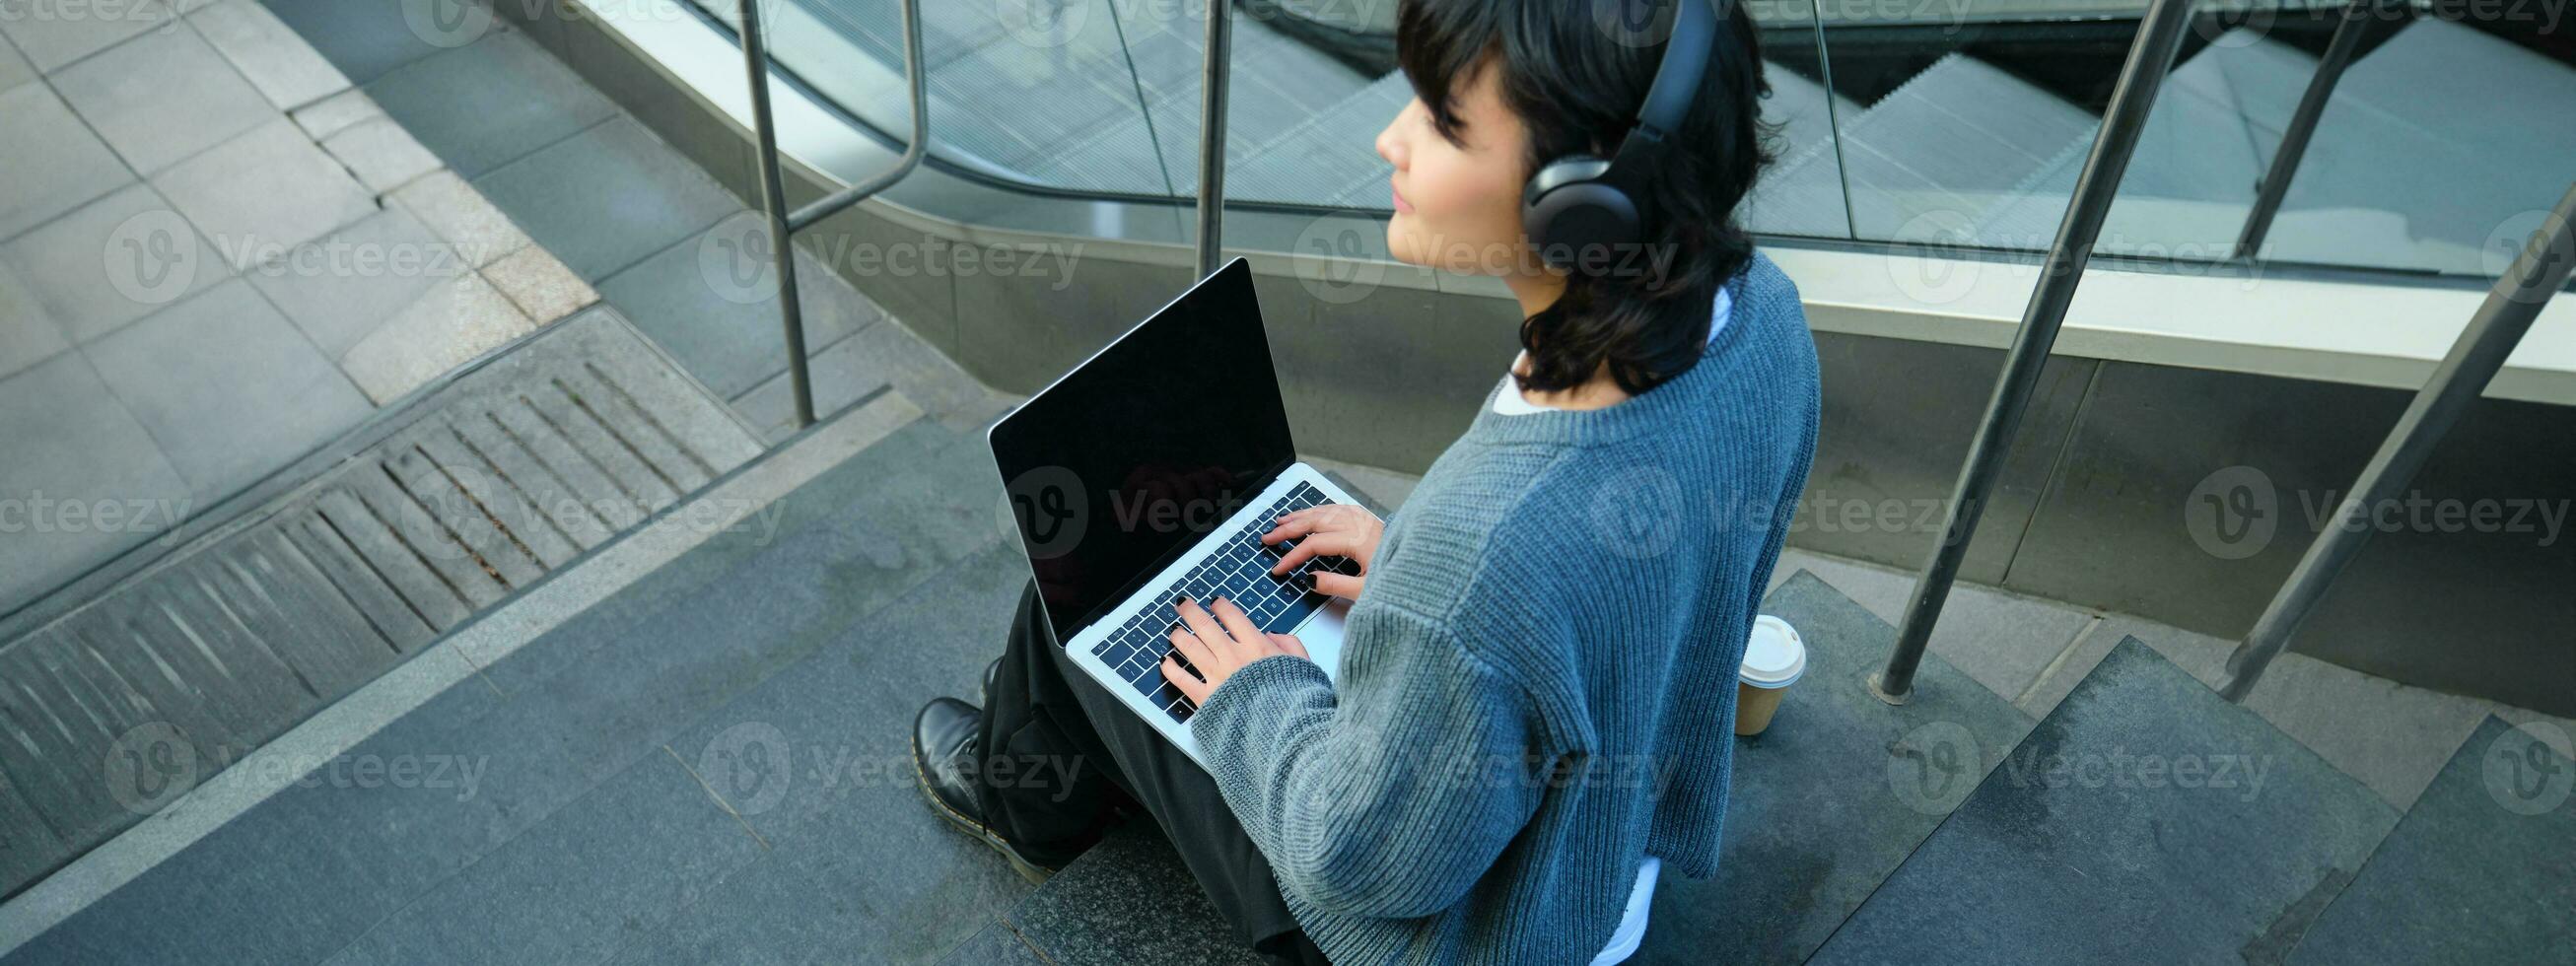 stänga upp porträtt av flicka, studerande Arbetar på bärbar dator och lyssnar musik i hörlurar. tom dator skärm och händer skriver på tangentbord foto